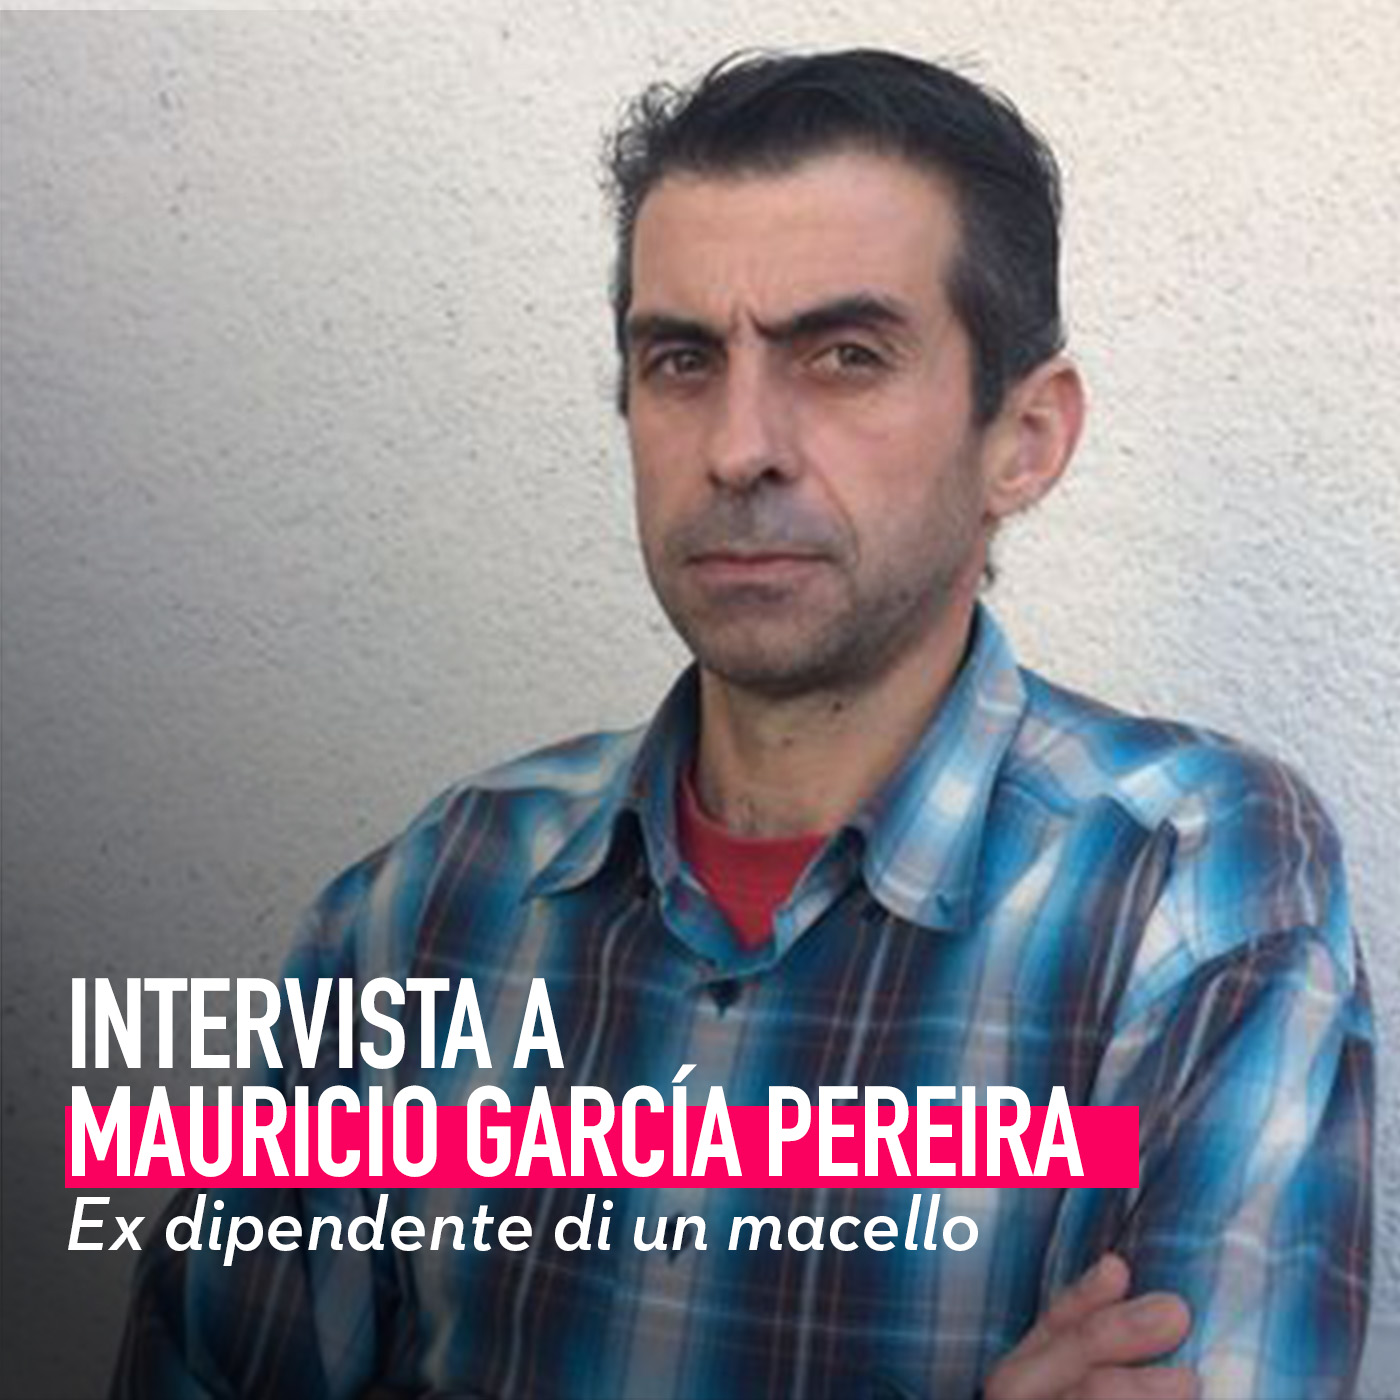 Mauricio Garcia Pereira